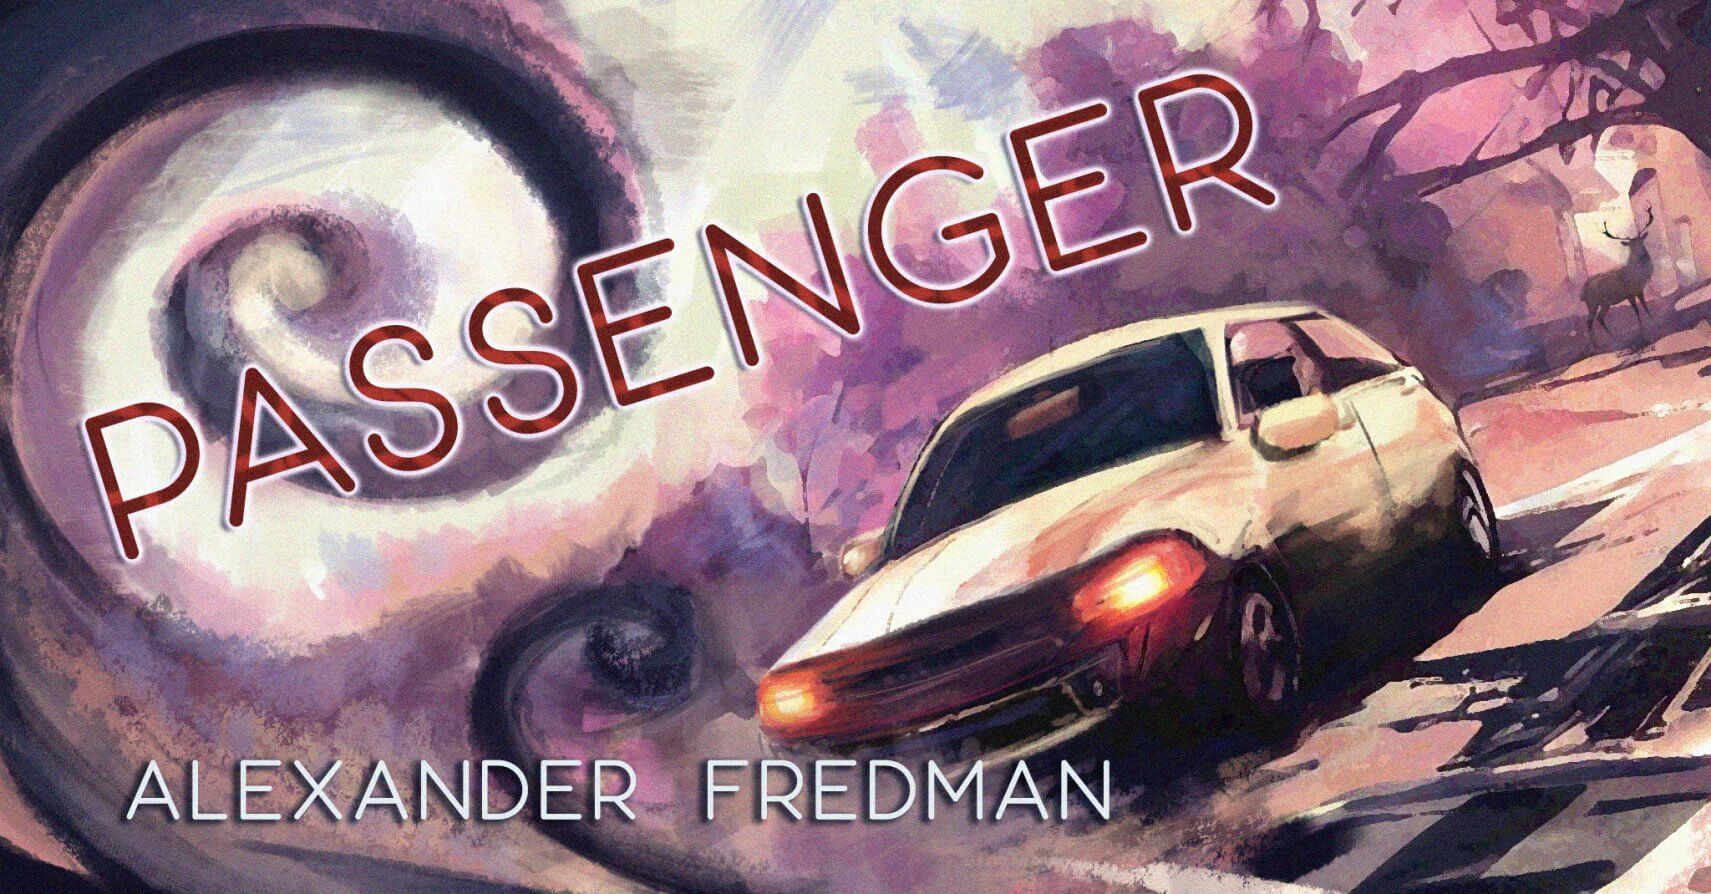 PASSENGER by Alexander Fredman